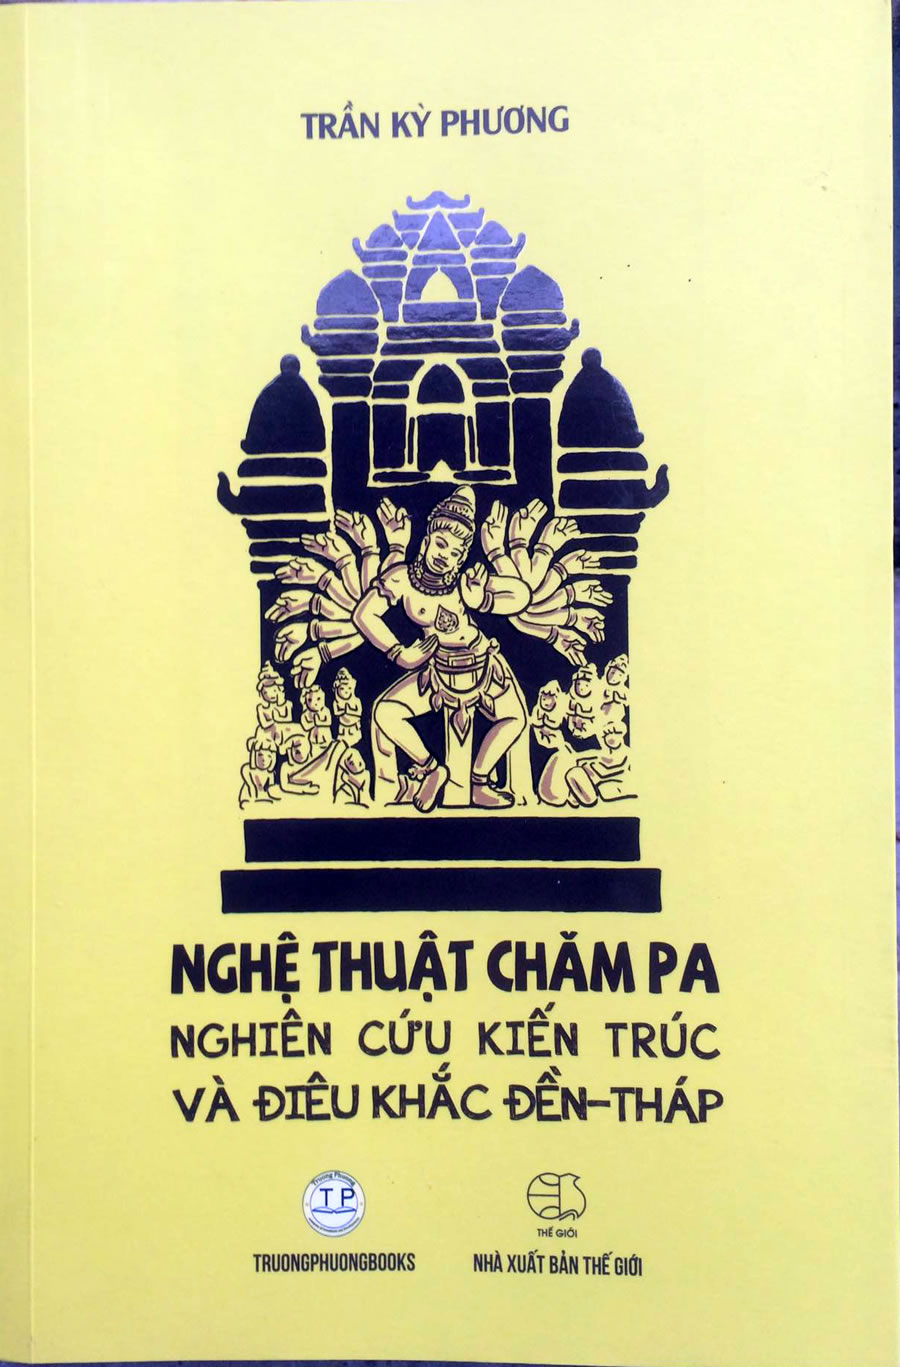 Nữ họa sĩ thổi hồn văn hóa Chăm vào tranh vẽ  Ảnh thời sự trong nước   Văn hoá  Xã hội  Thông tấn xã Việt Nam TTXVN